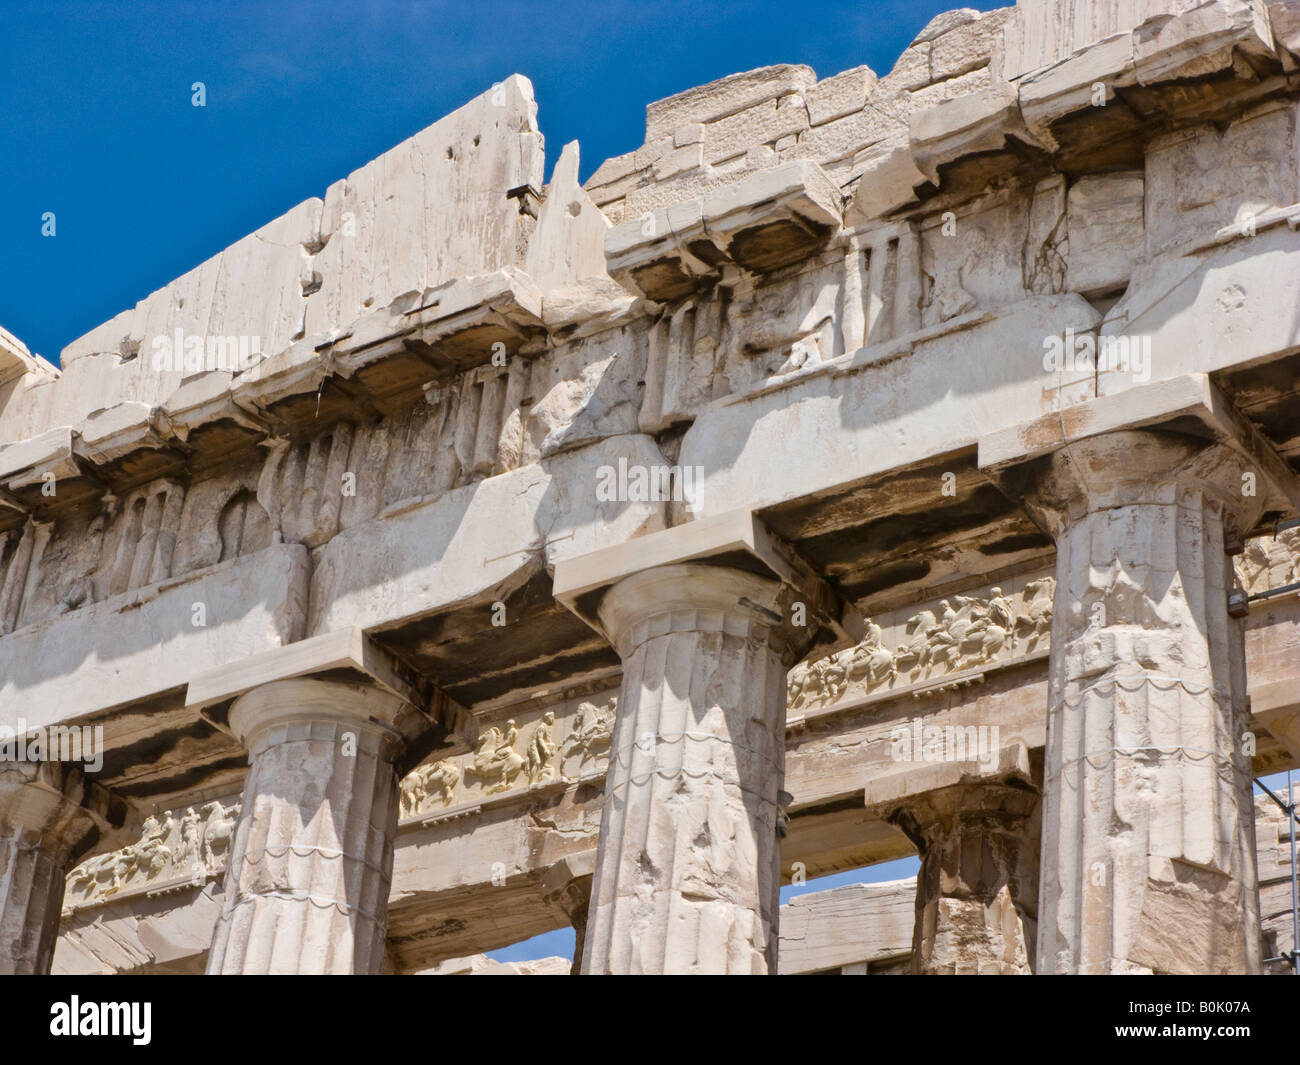 detail of west facade of Parthenon, Acropolis, Athens, Greece Stock Photo